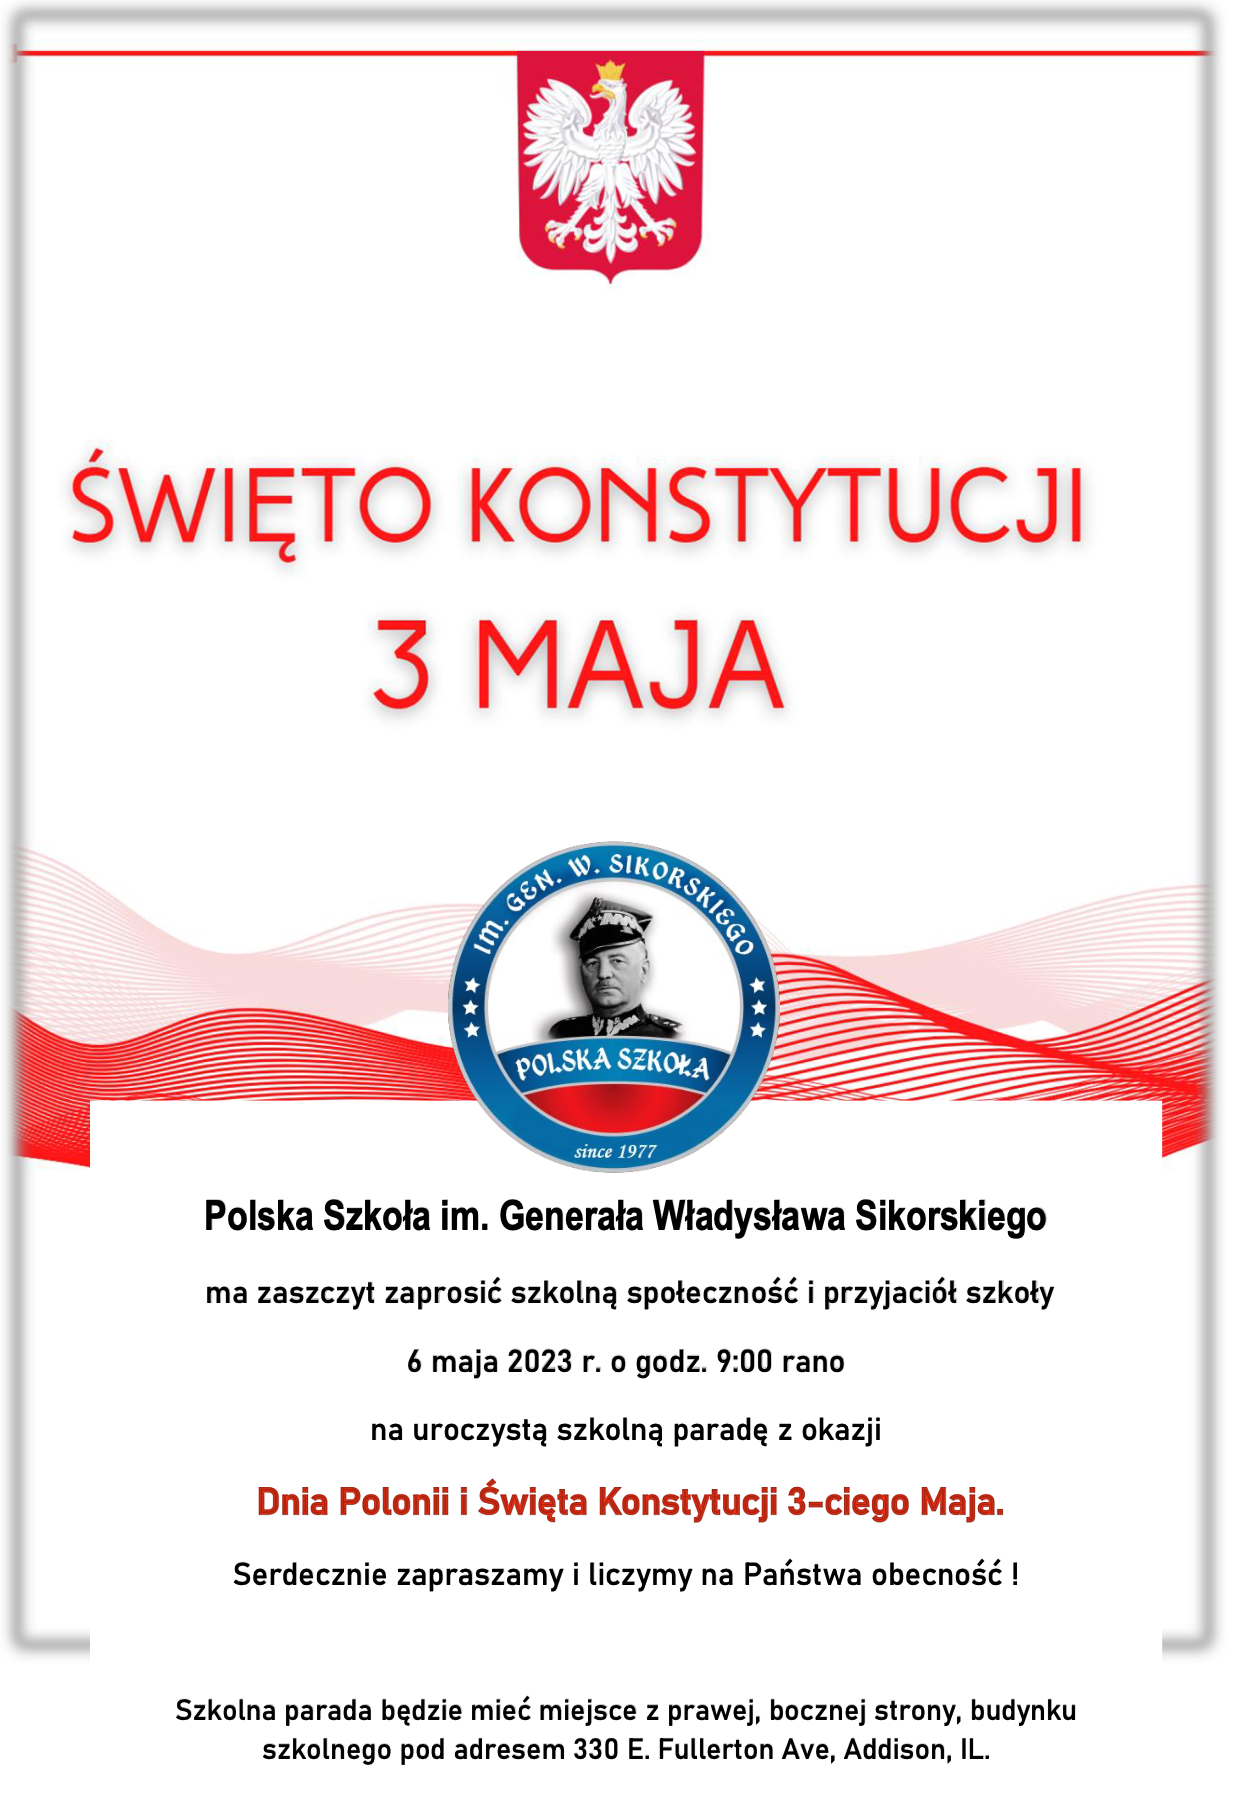 Święto Konstytucji 3 Maja - Polska Szkola im. Generala W Sikorskiego